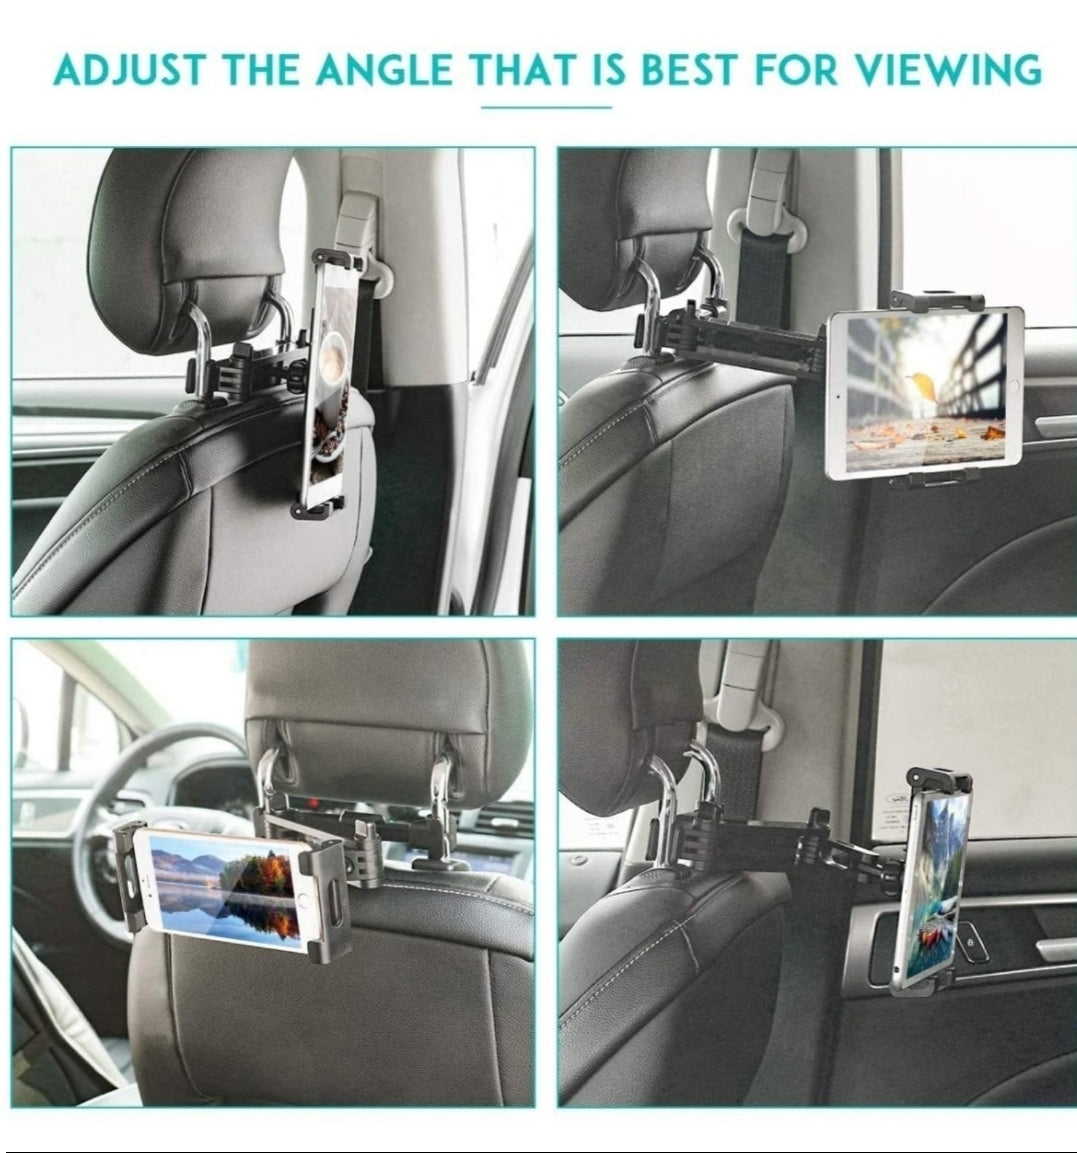 Car Headrest Tablet Mount